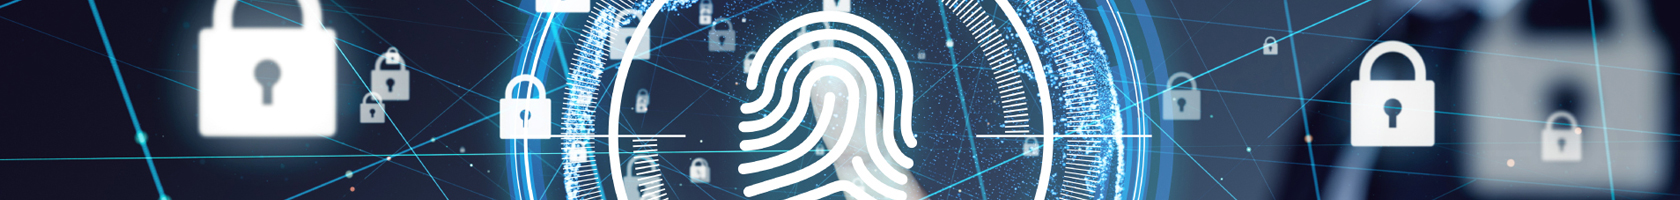 Imagen - Ilustración digital donde se puede ver una huella digital en vectores graficas y un dedo de una persona, al rededor varios iconos que representan seguridad digital